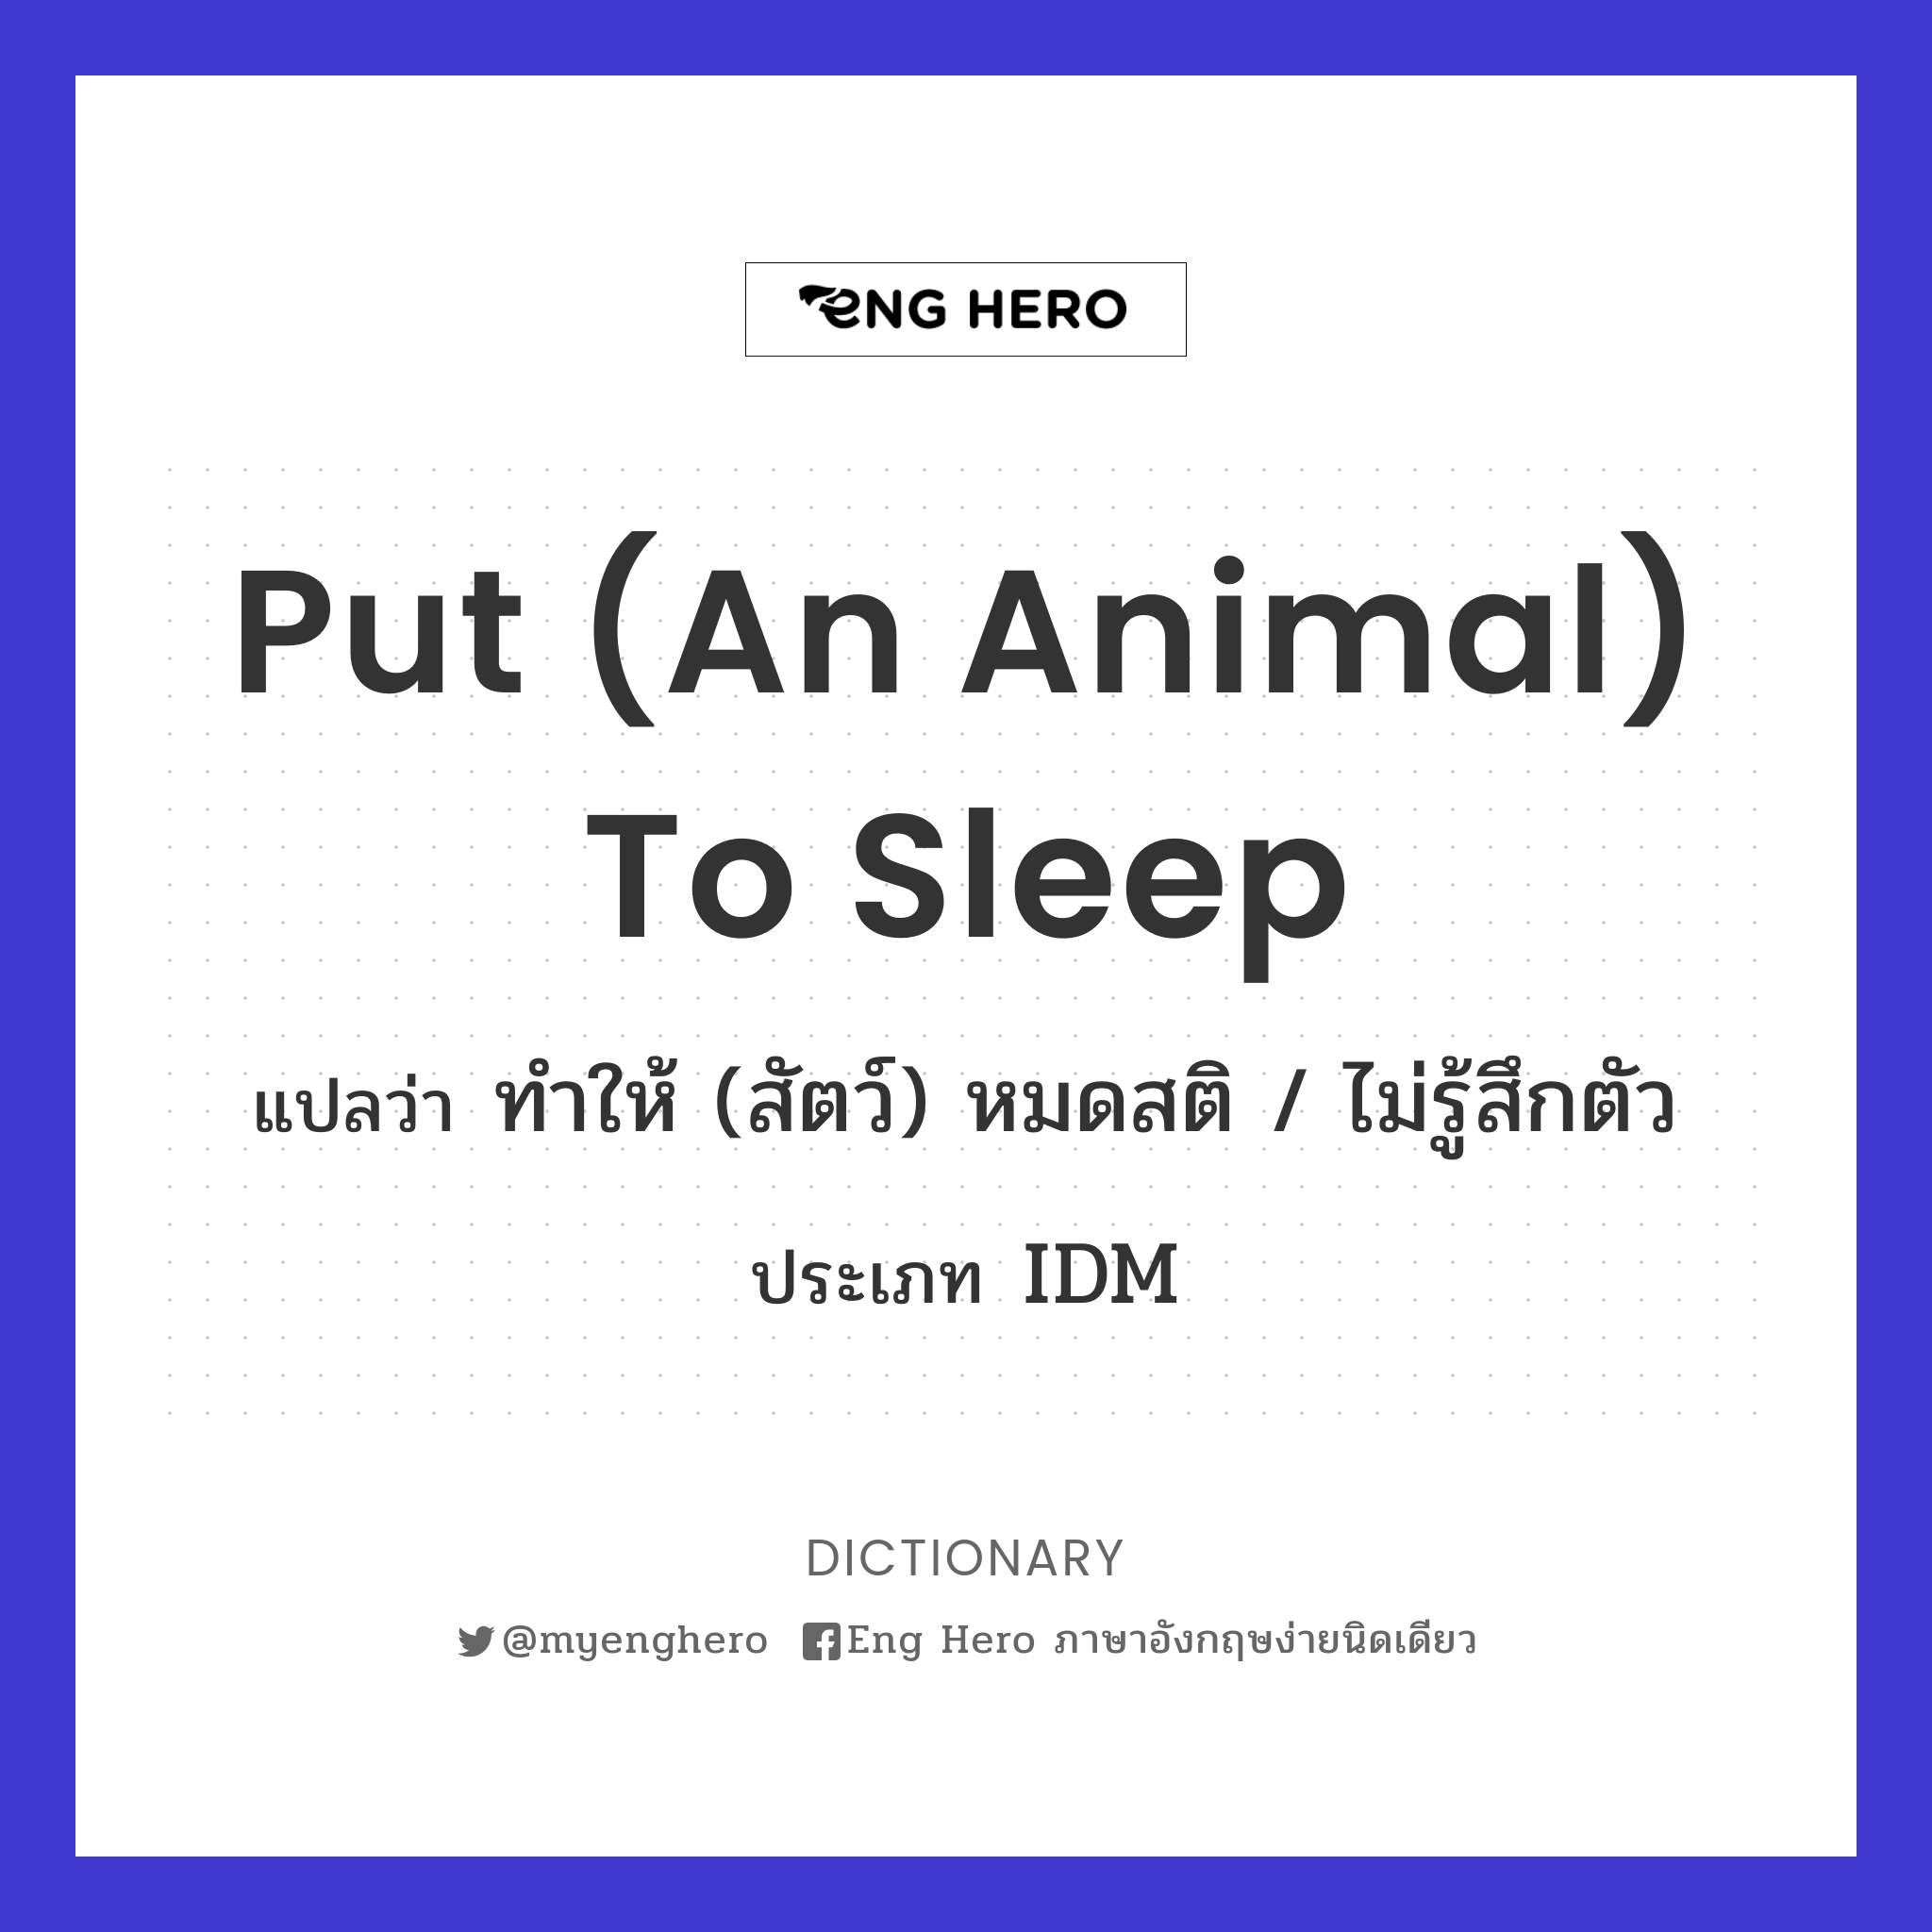 put (an animal) to sleep